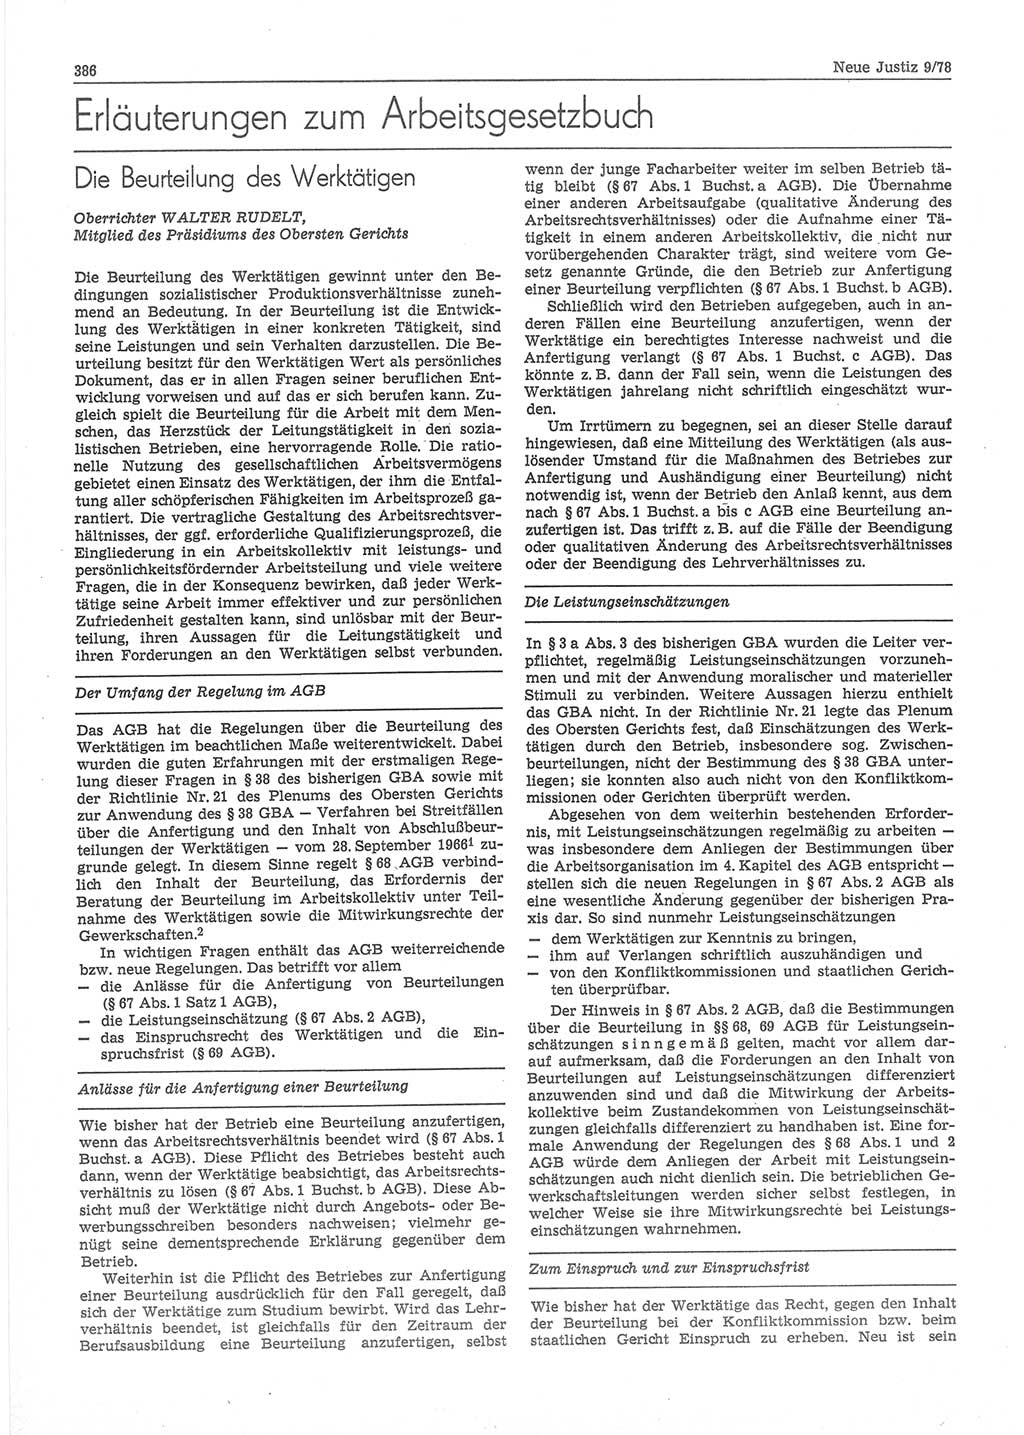 Neue Justiz (NJ), Zeitschrift für sozialistisches Recht und Gesetzlichkeit [Deutsche Demokratische Republik (DDR)], 32. Jahrgang 1978, Seite 386 (NJ DDR 1978, S. 386)